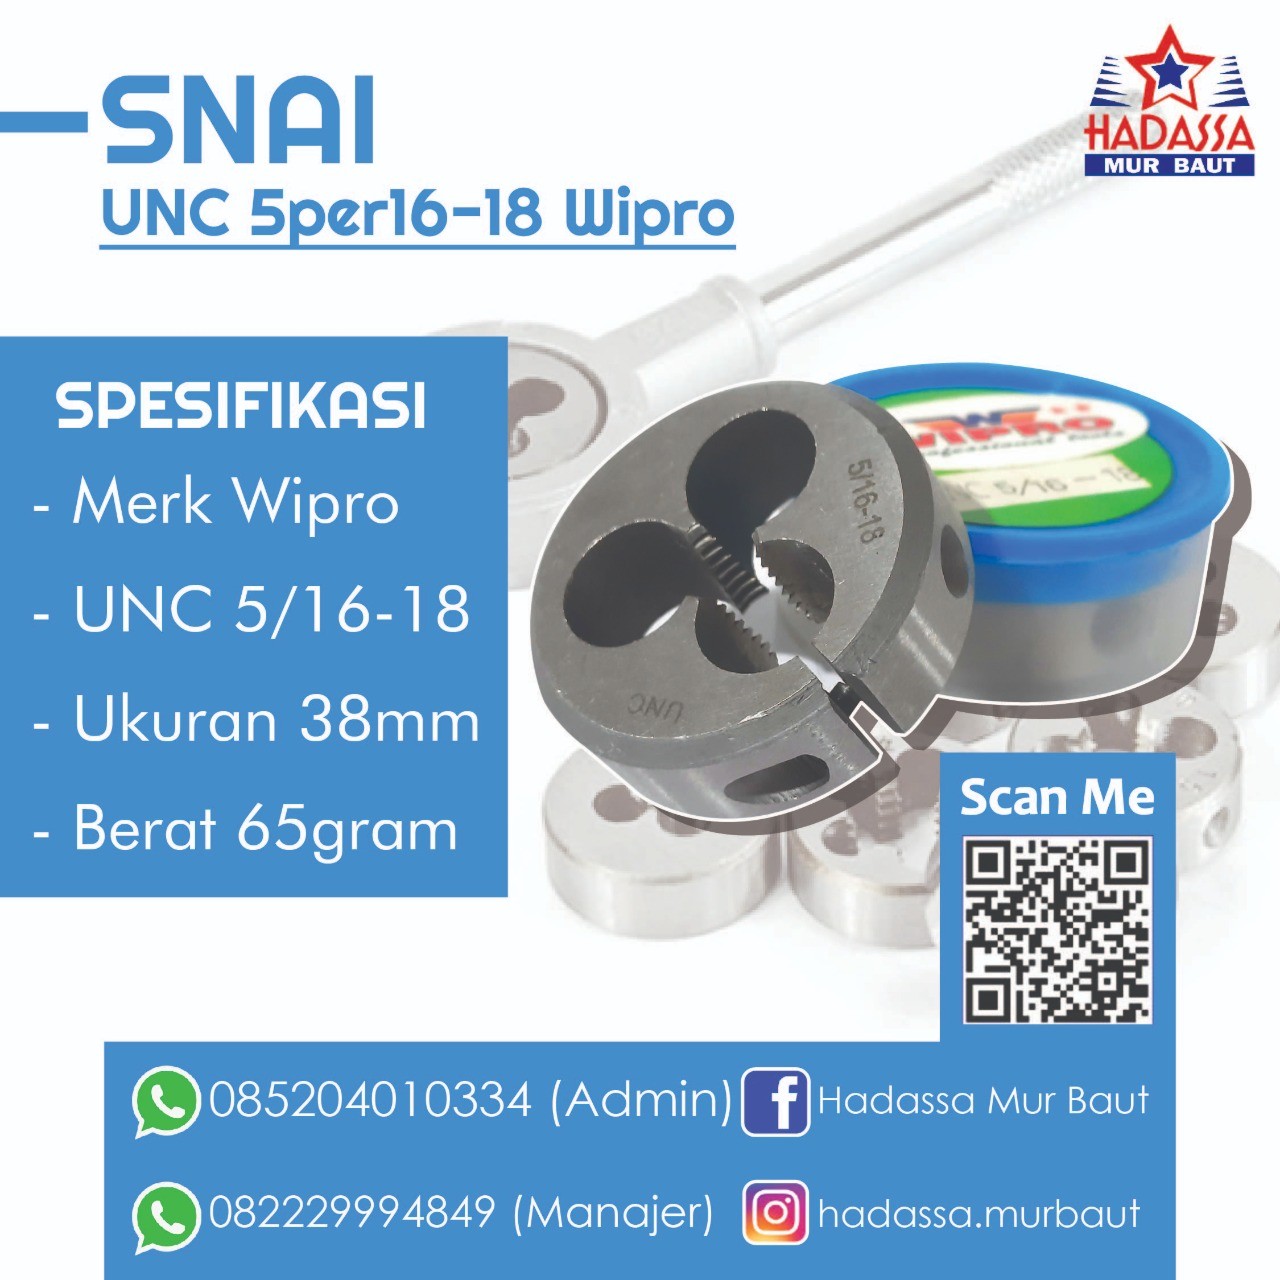 Snai UNC 5per16-18 Wipro